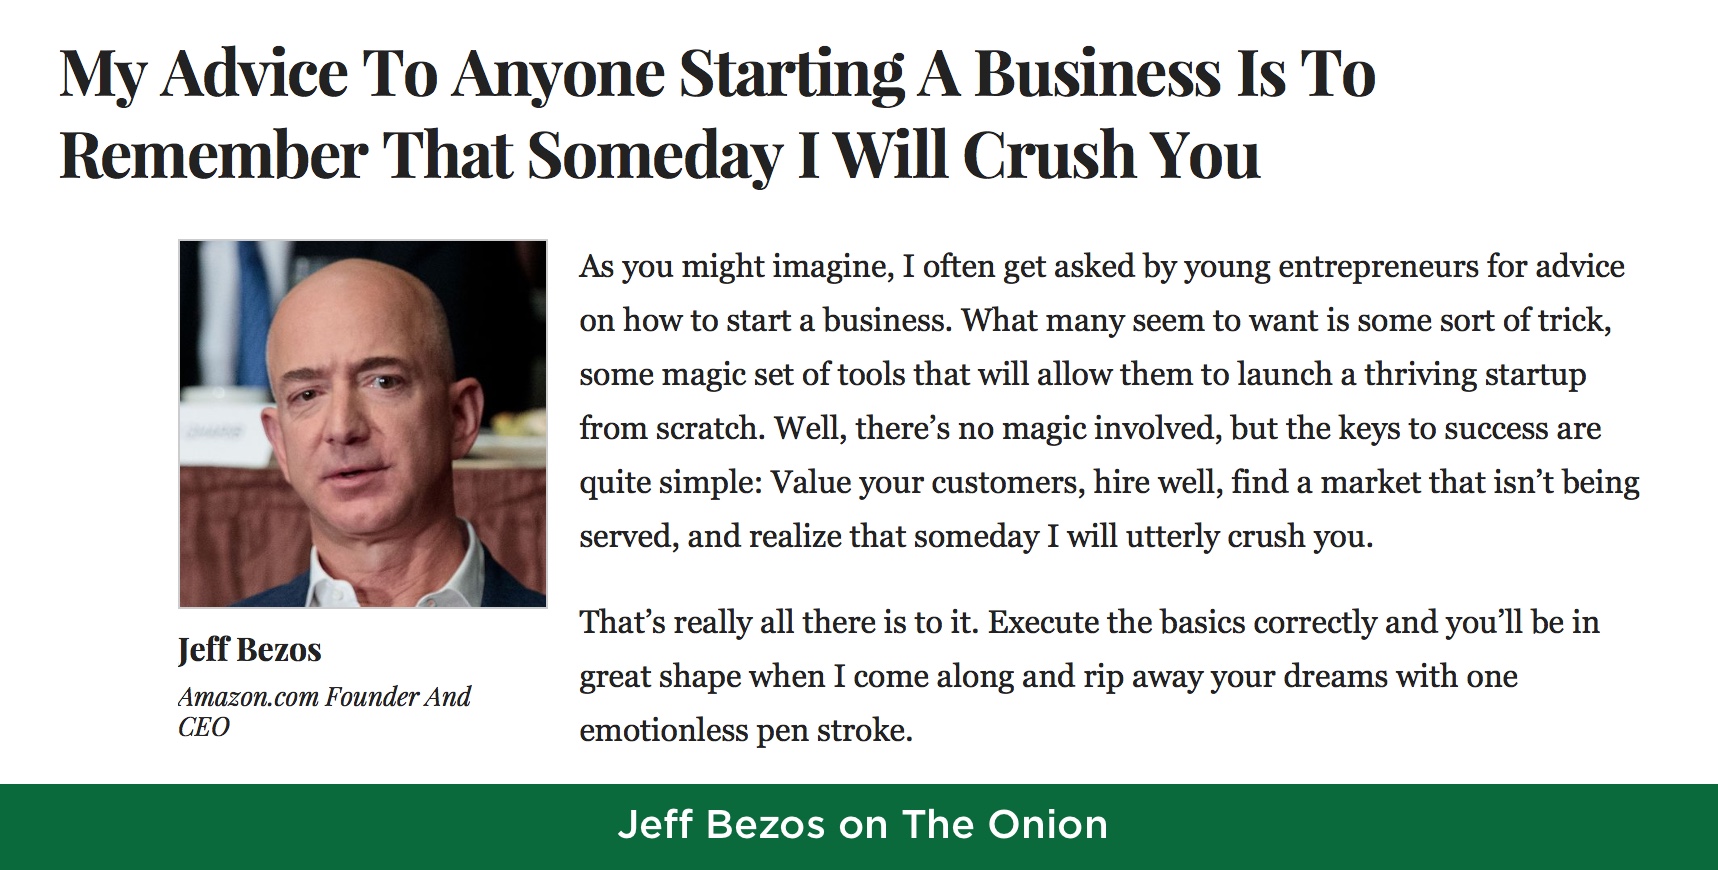 Jeff Bezos on Execution